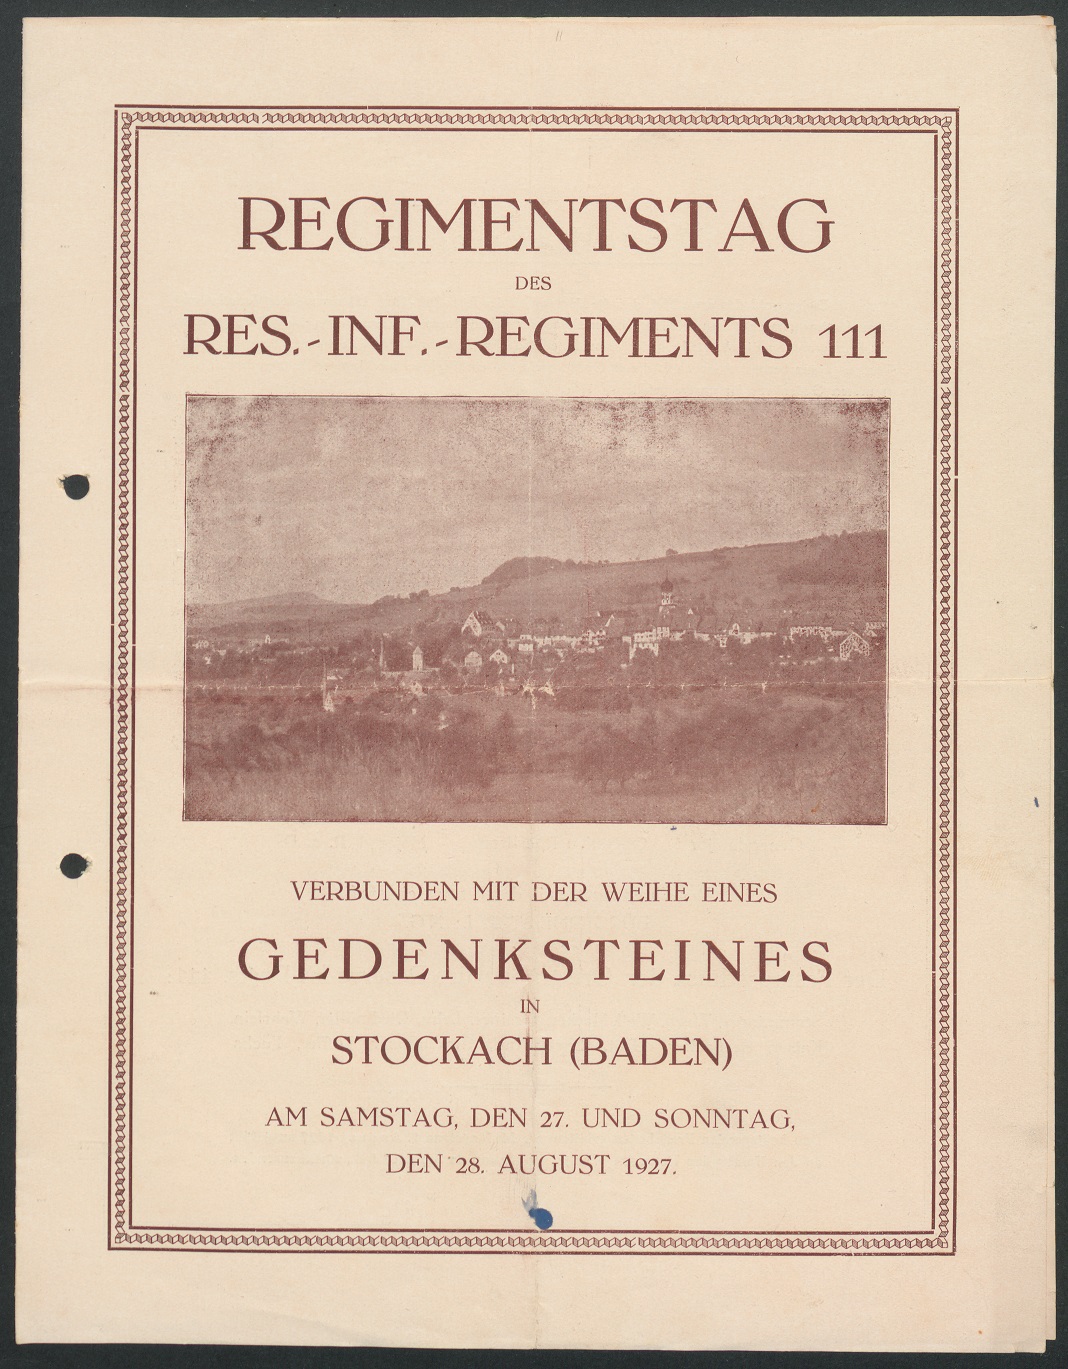  Programm von 1927 (Quelle: WGM Inv. Nr. 024590)